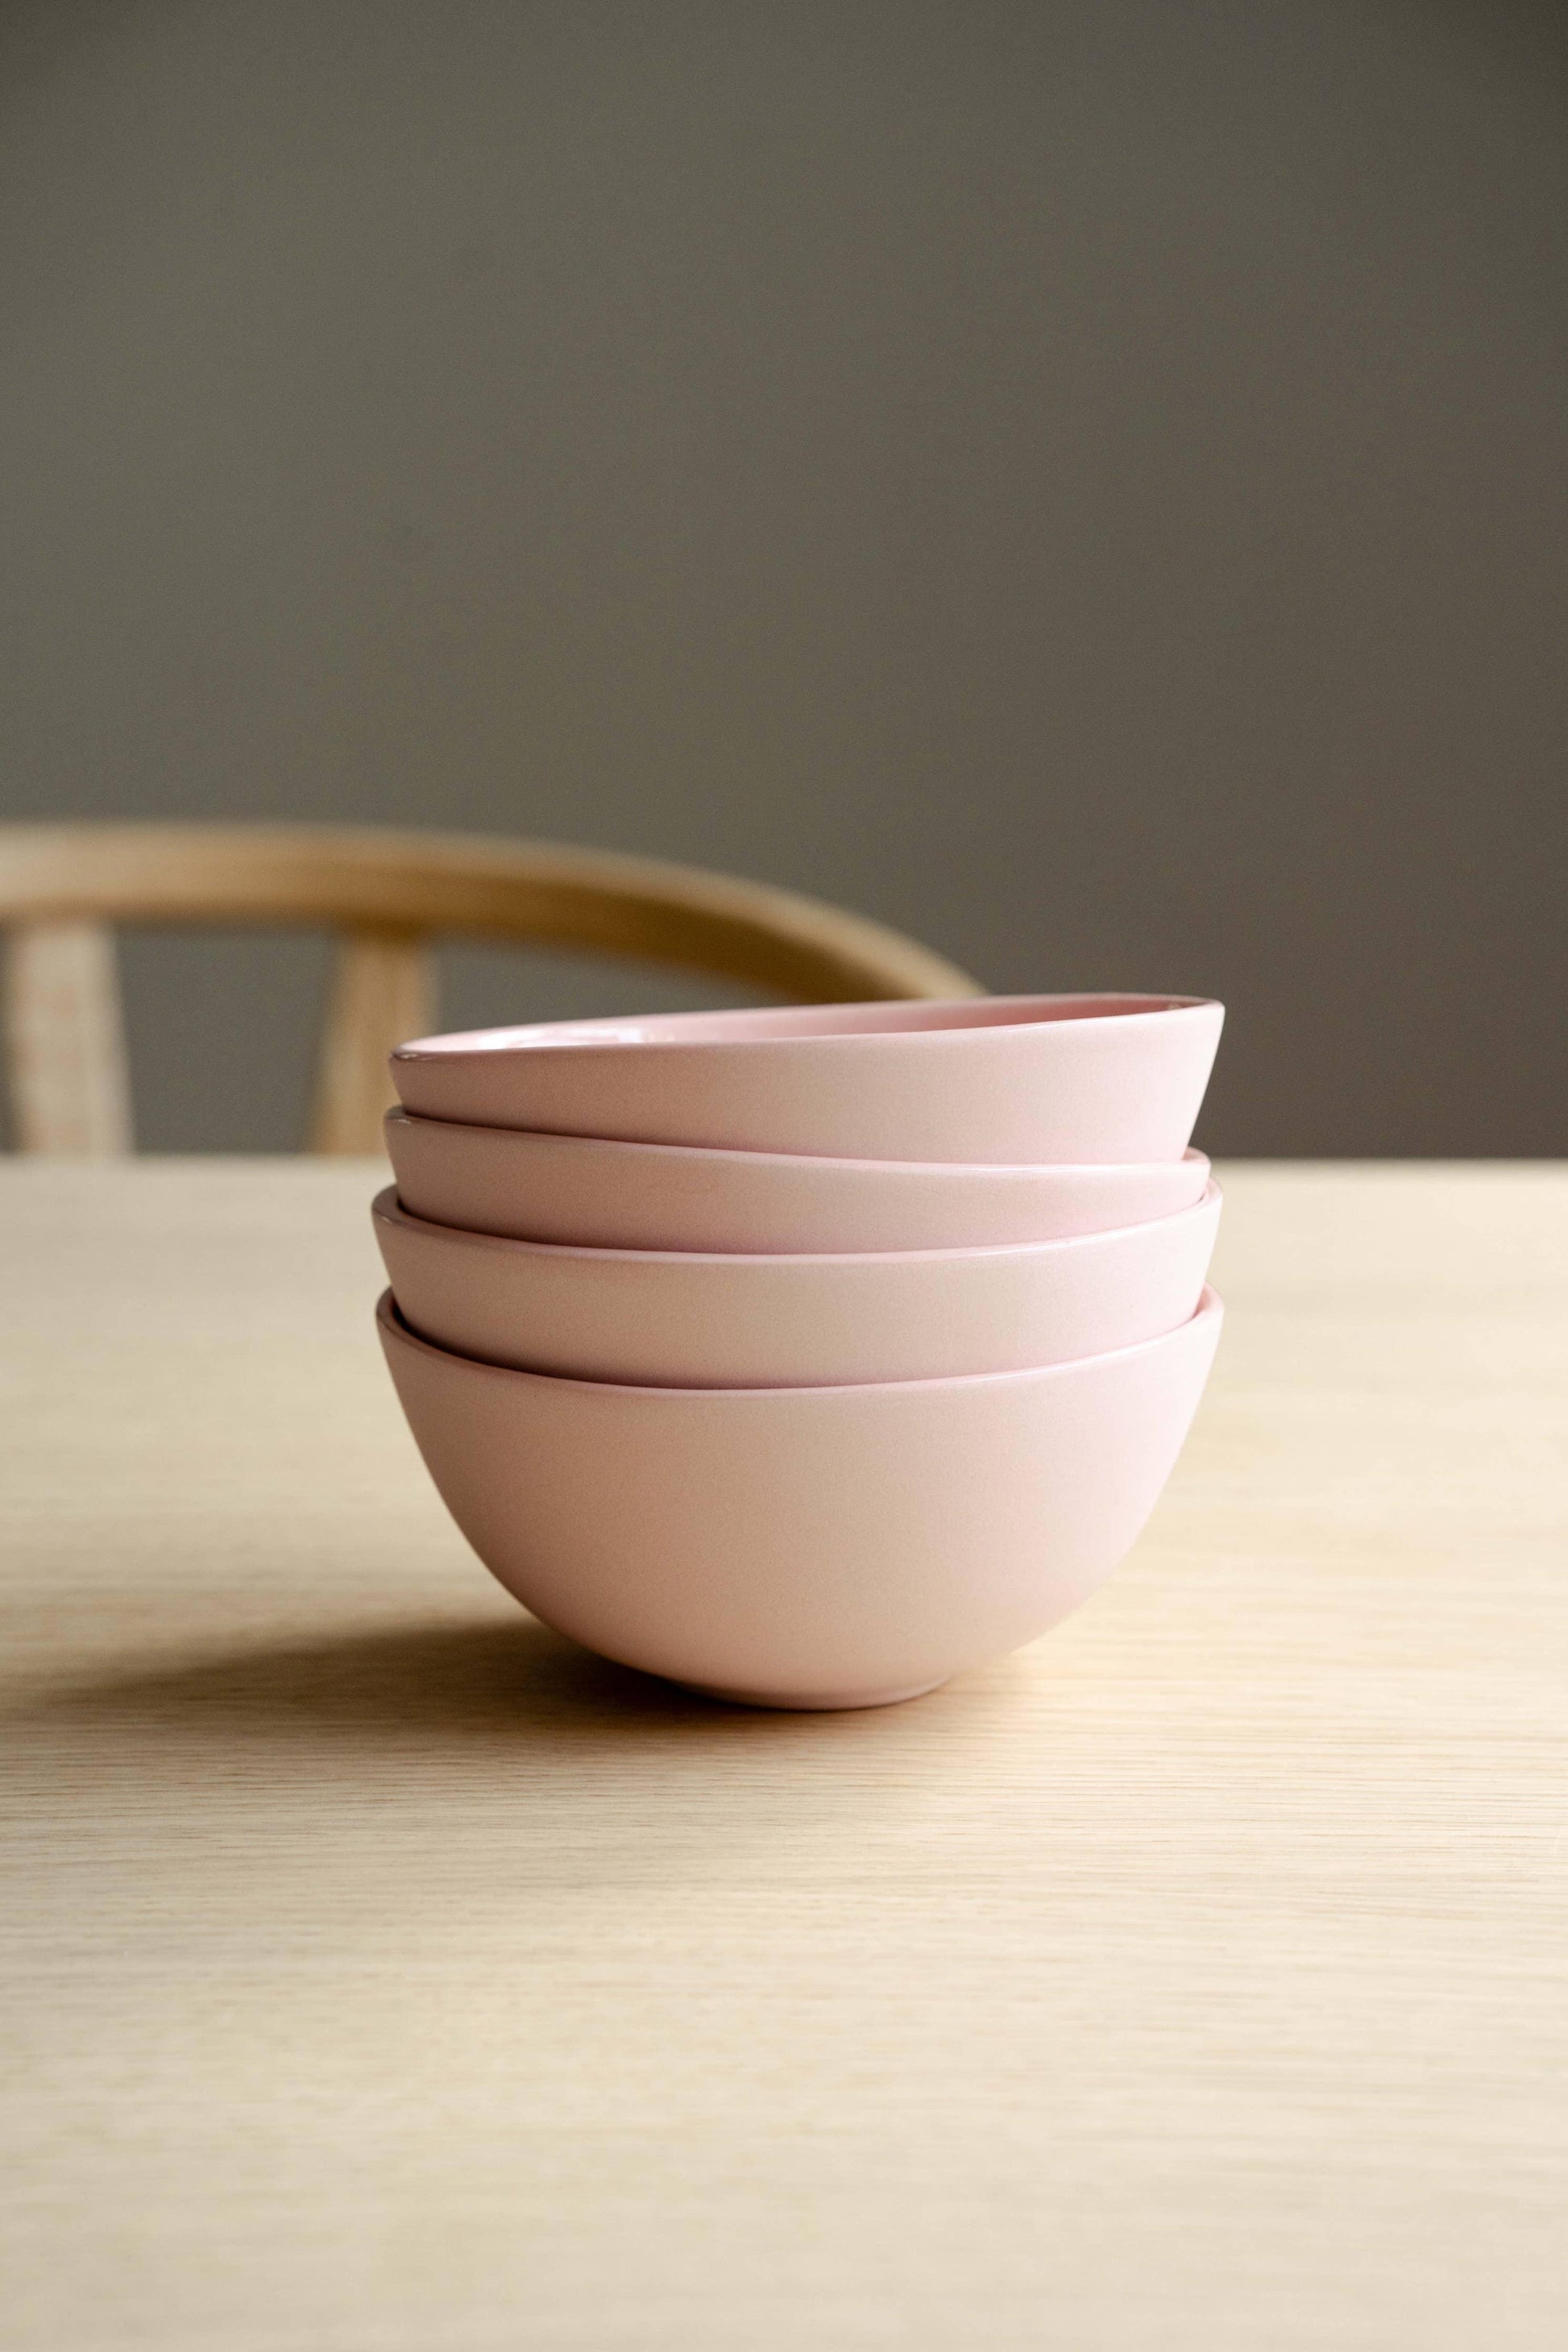 Ethical Trade Co Home Powder Pink / Everyday Bowl Handmade Ukrainian Porcelain Bowls